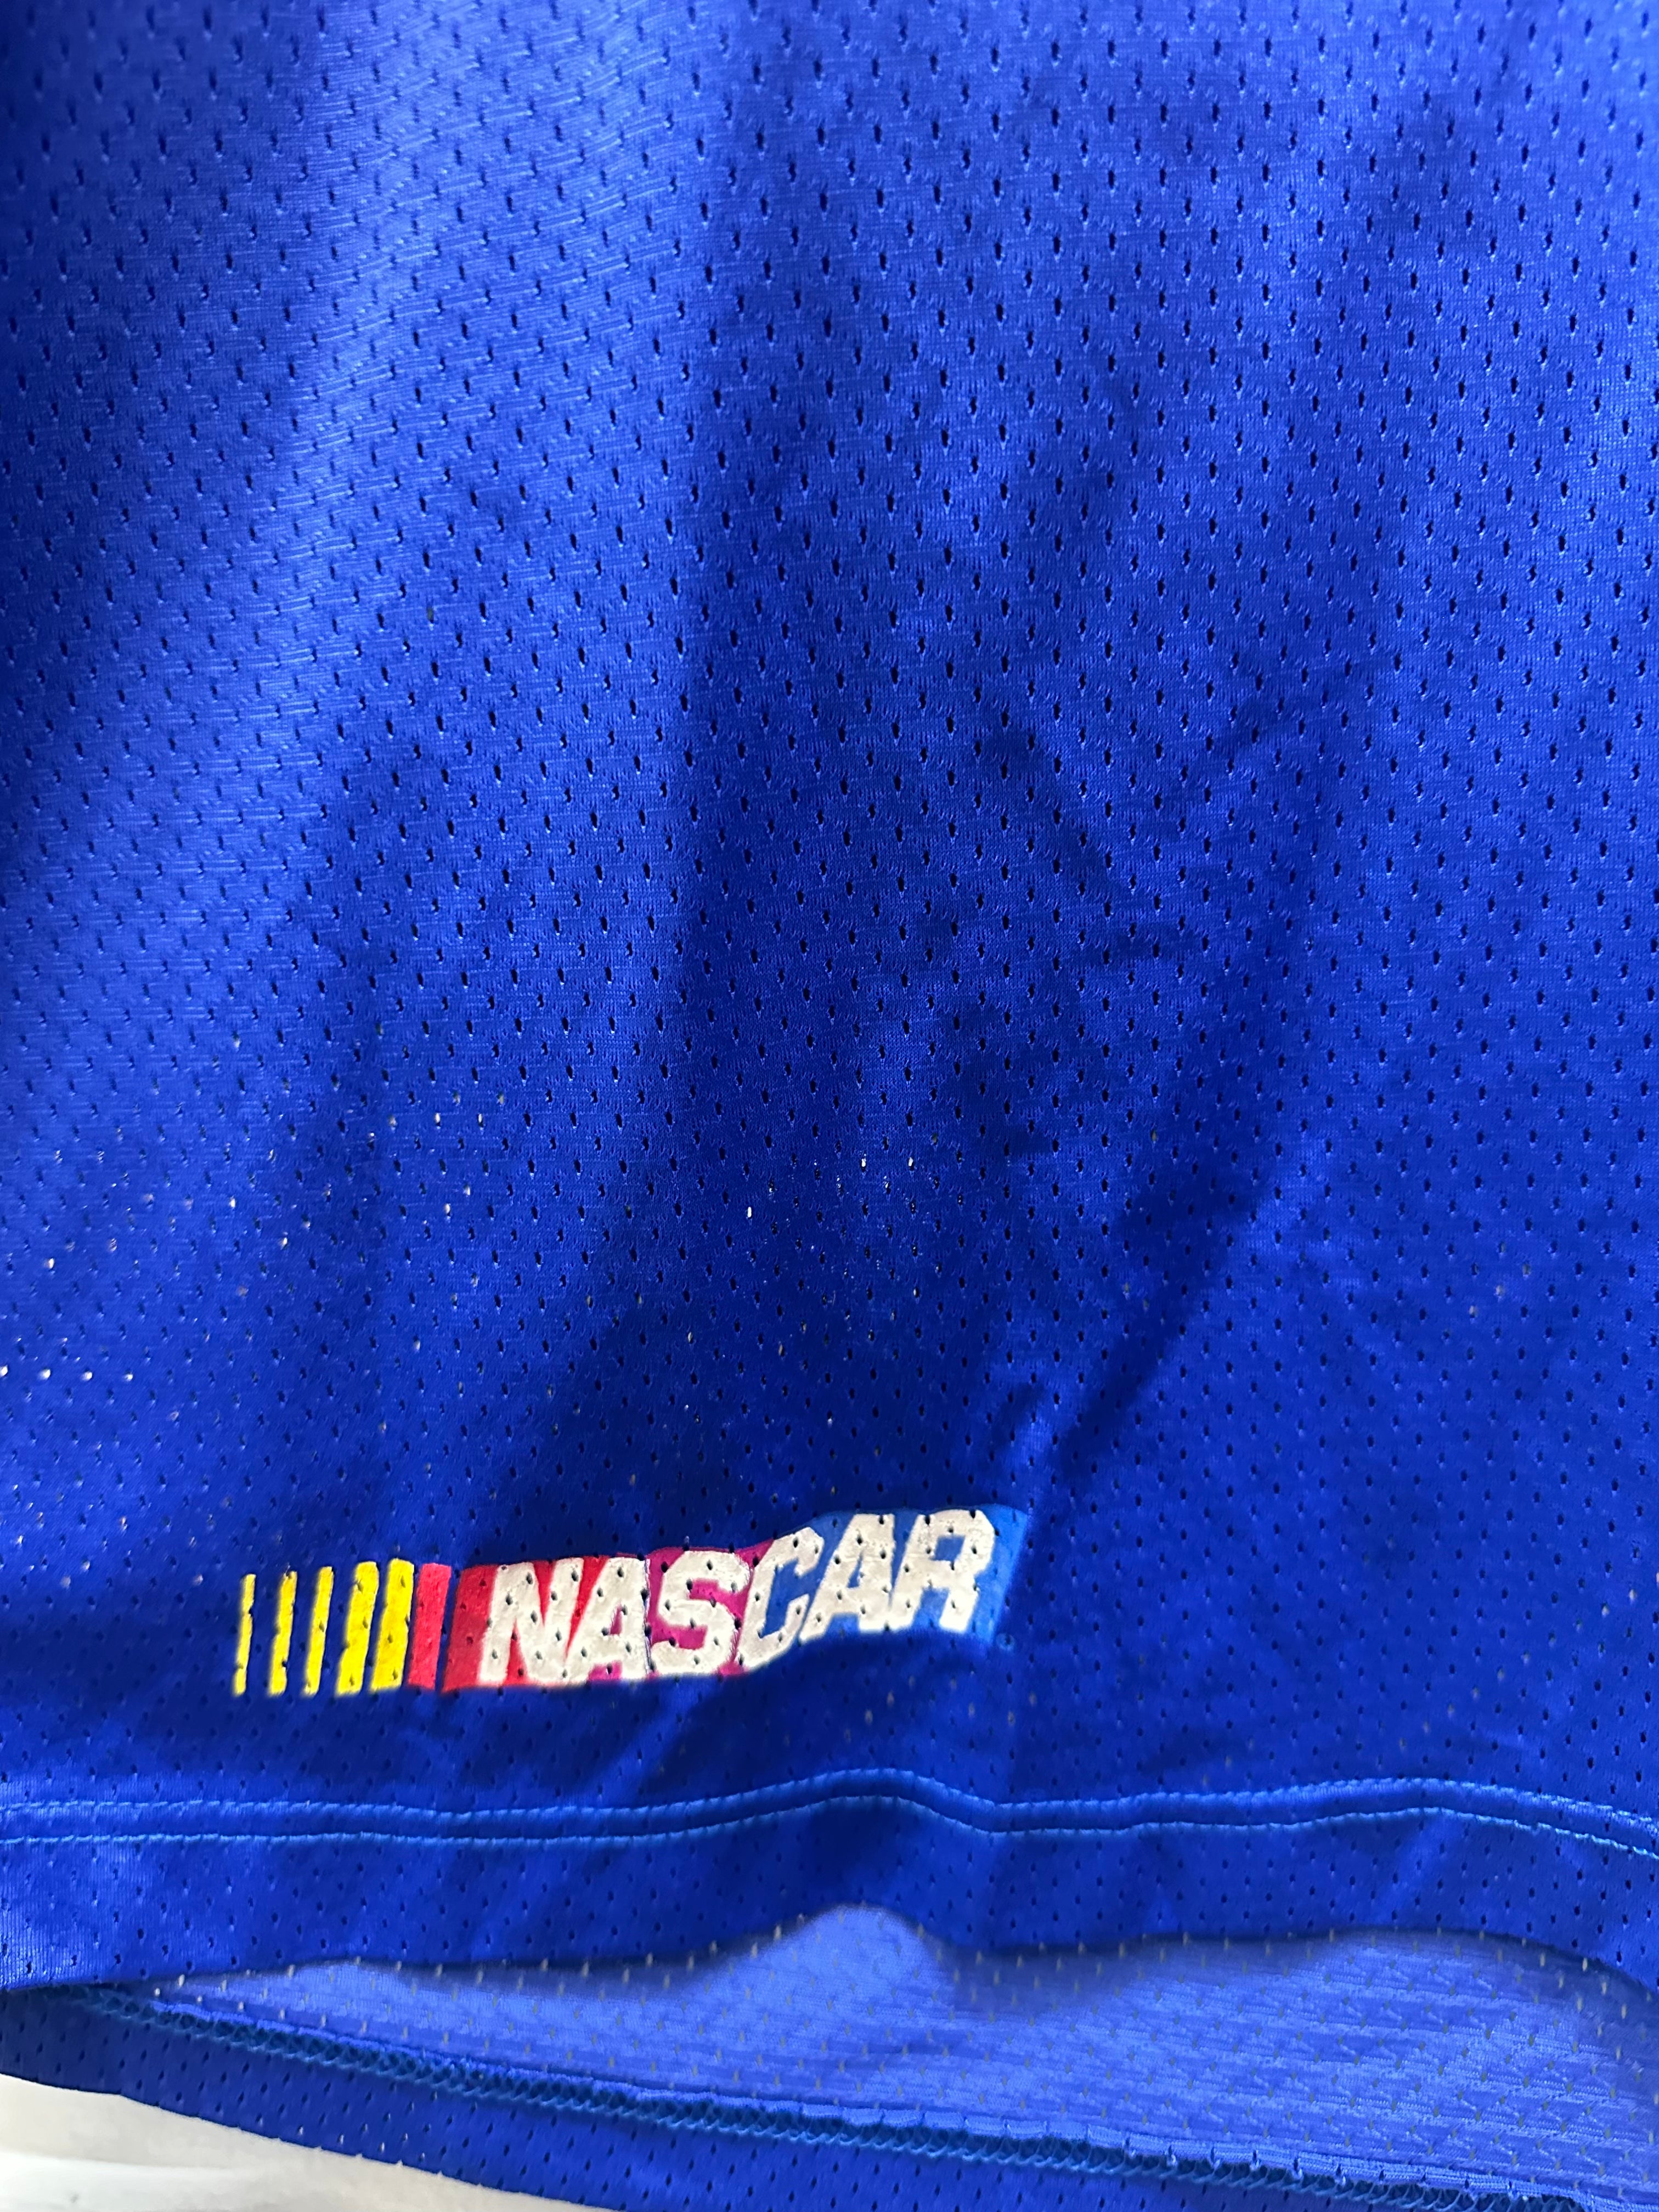 NASCAR Jersey